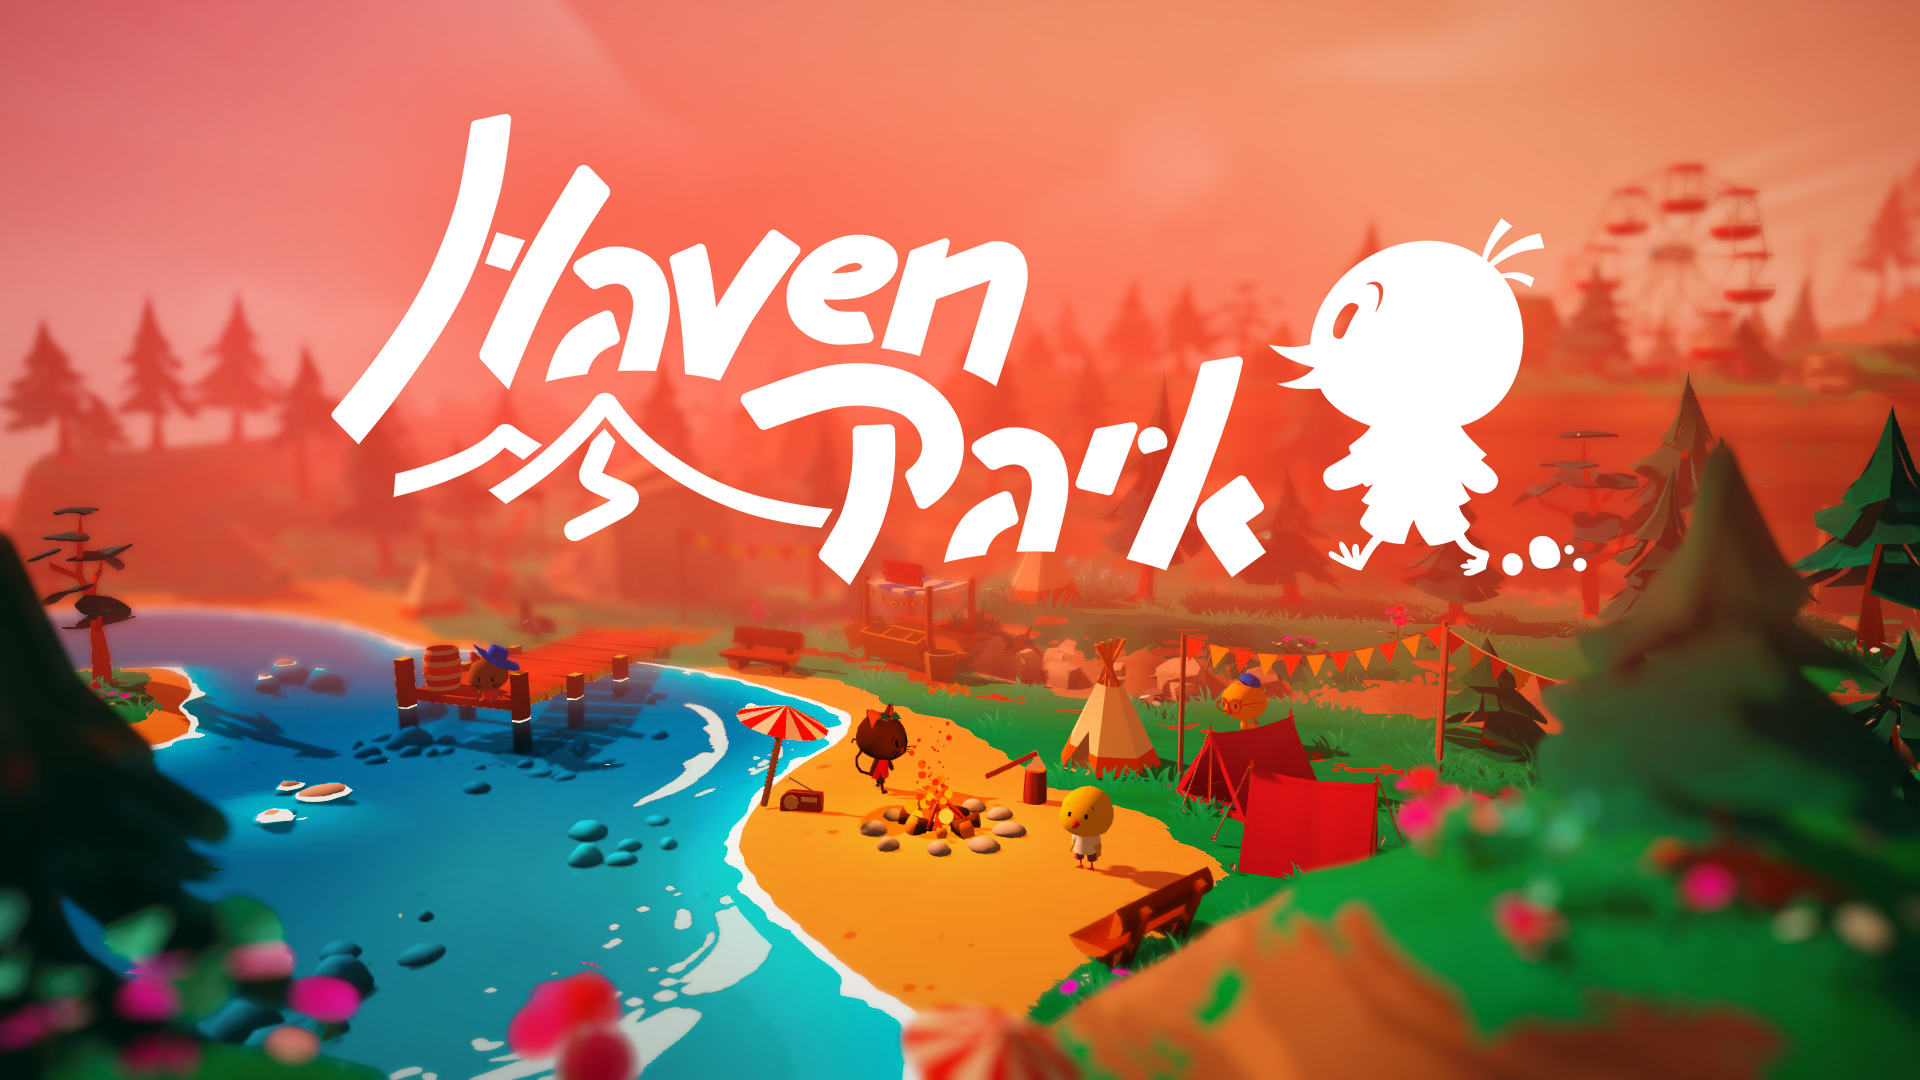 Haven Park - Game mang lại cảm giác thư giãn, giải trí cho người chơi